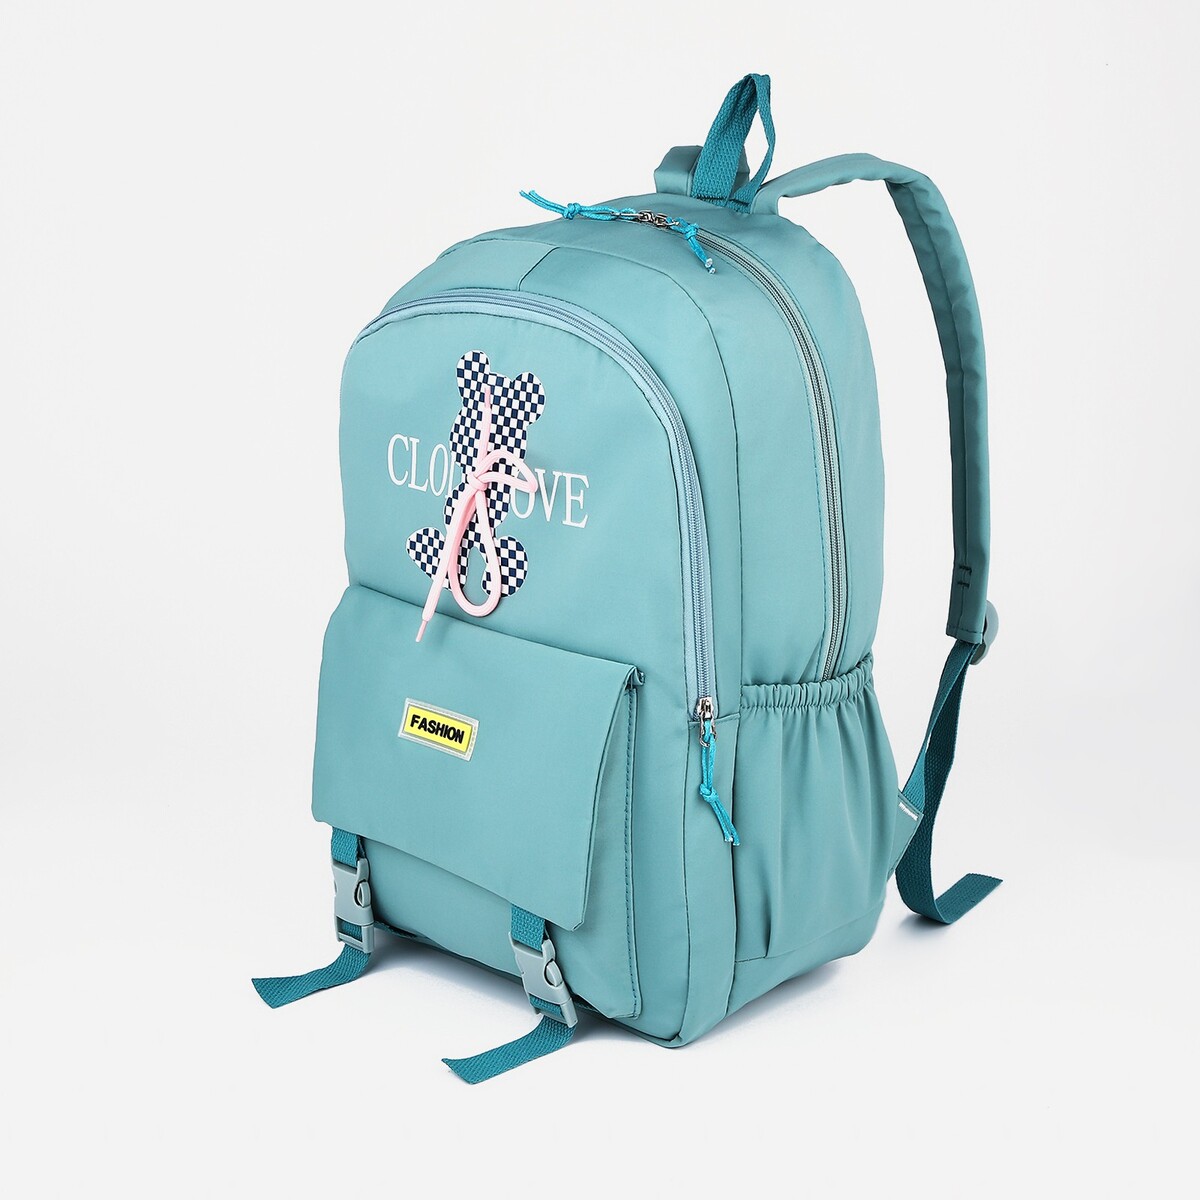 Рюкзак школьный из текстиля на молнии, 3 кармана, цвет бирюзовый рюкзак mad wave lane m1126 04 0 16w бирюзовый